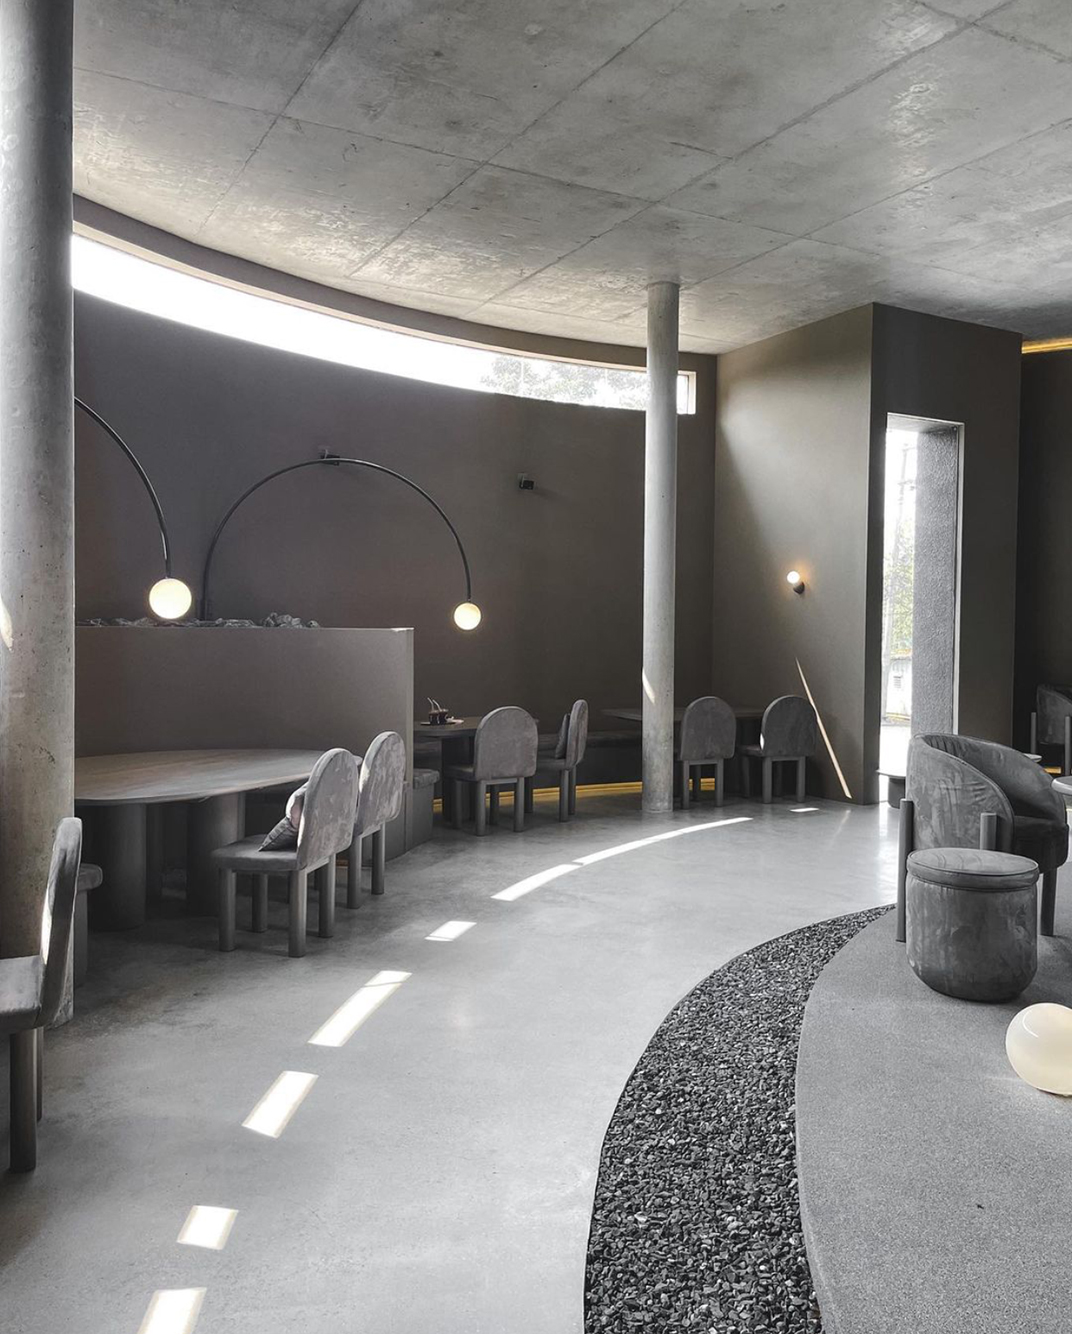 圆形建筑里的咖啡店PLUTO 咖啡店 水磨石 天井 石材 月光球 镜面不锈钢 logo设计 vi设计 空间设计